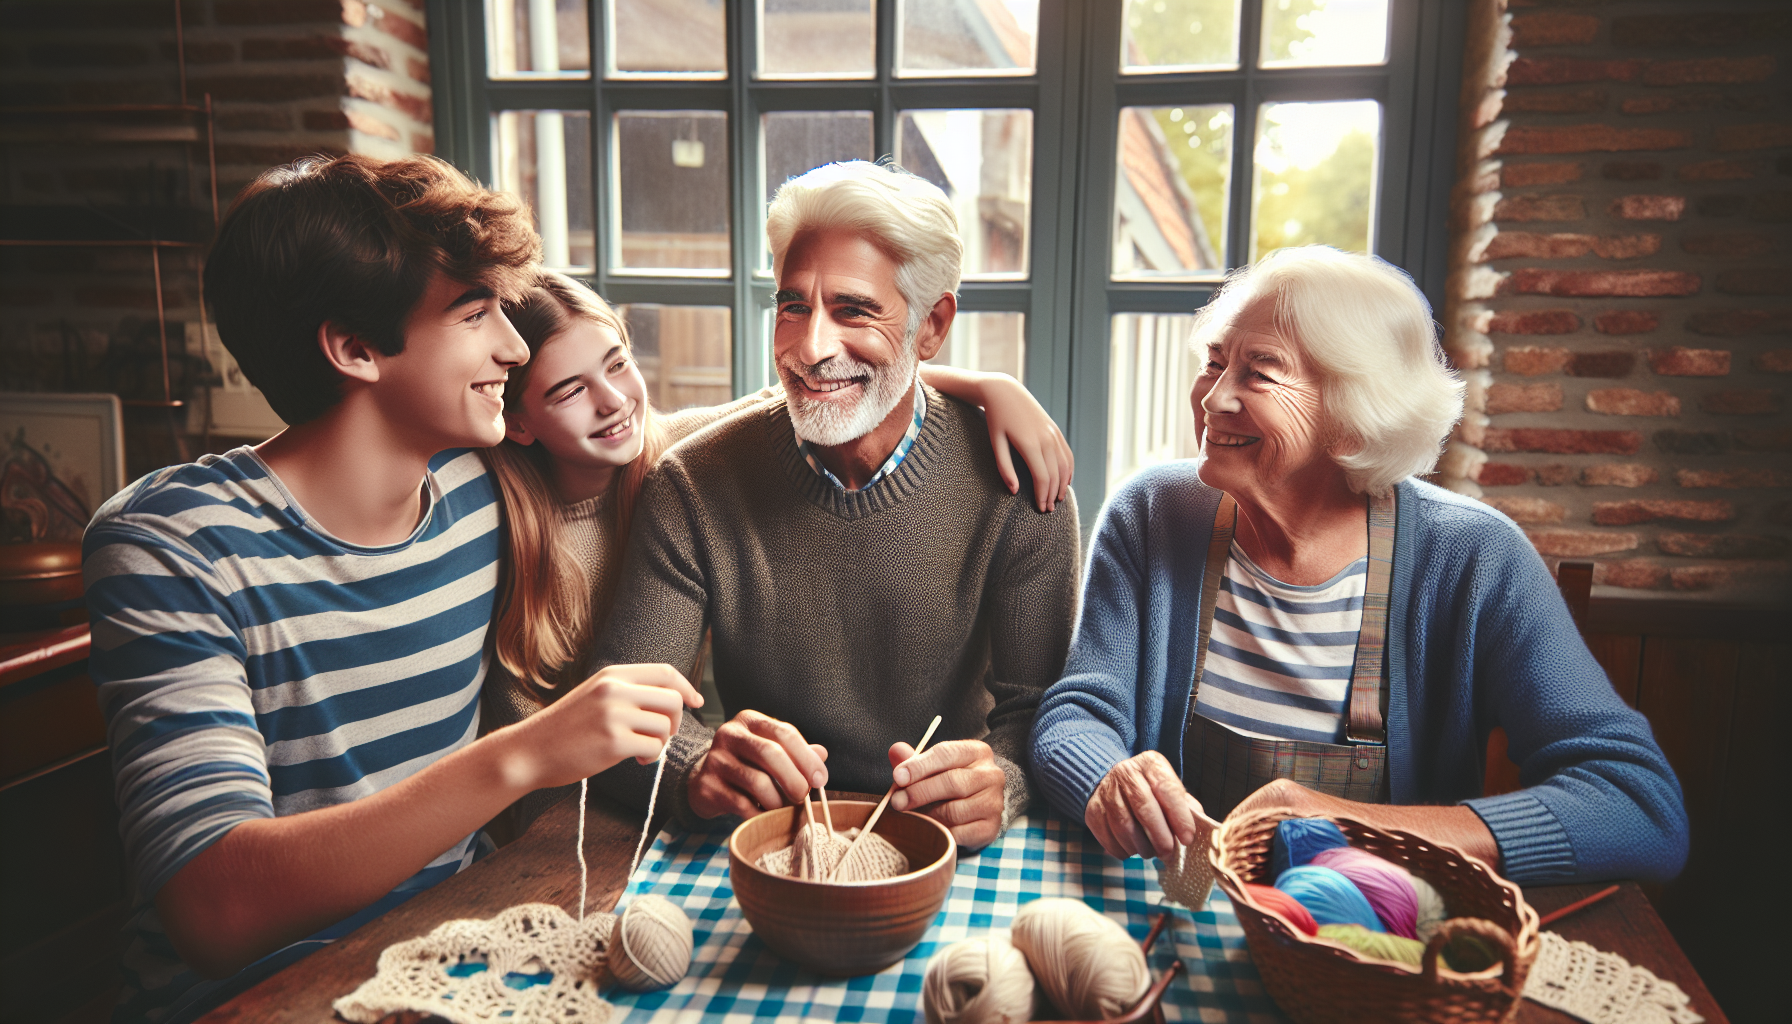 découvrez comment les grands-parents en belgique jouent un rôle essentiel dans la vie familiale et apportent leur précieuse contribution à l'épanouissement de leurs petits-enfants.